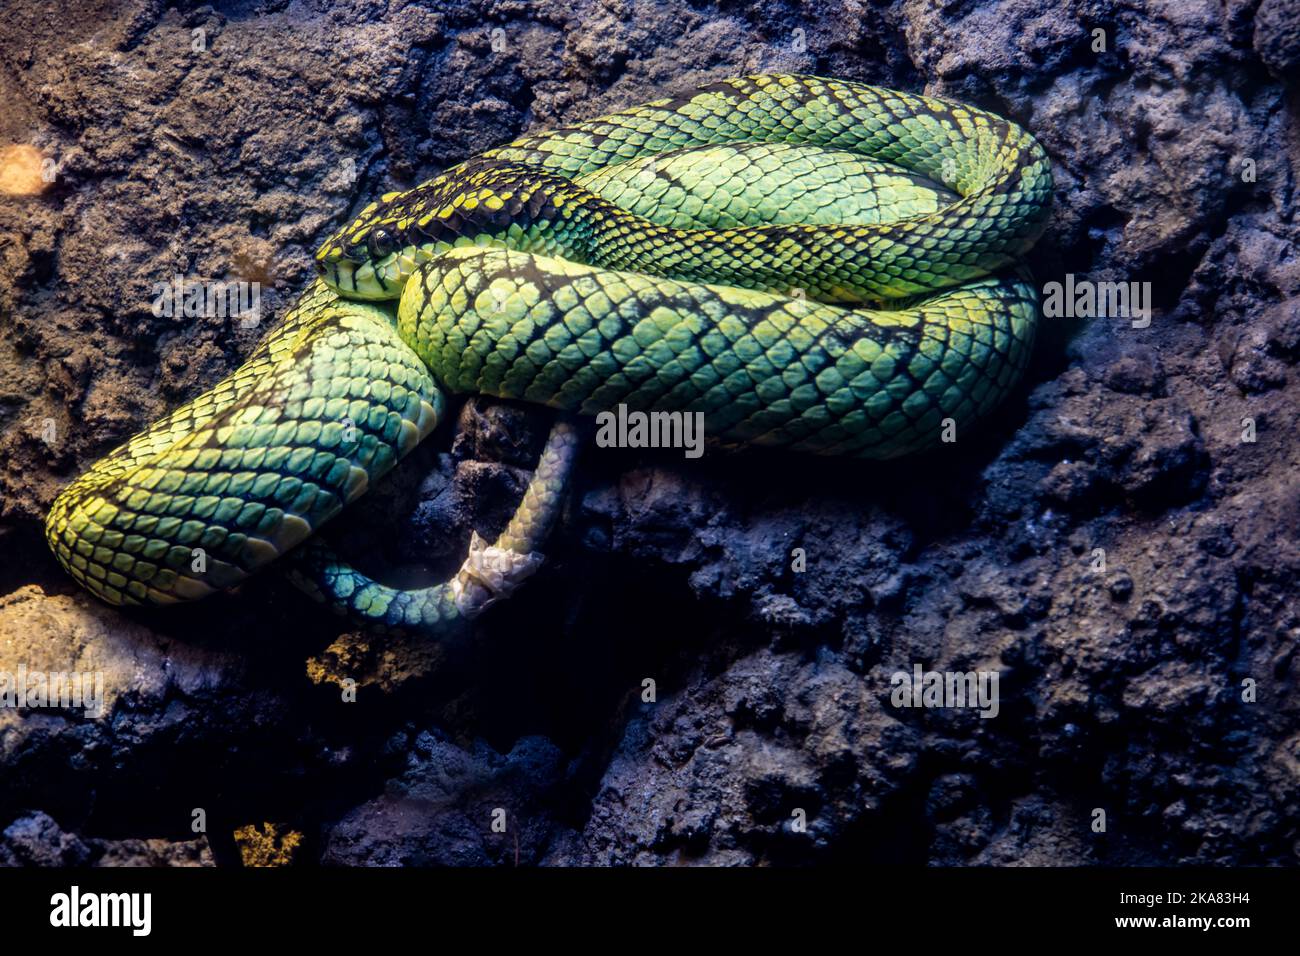 Le pitvipère vert sri lankais (Craspedocephalus trigonocephalus) est une espèce de vipère venomous endémique au Sri Lanka Banque D'Images